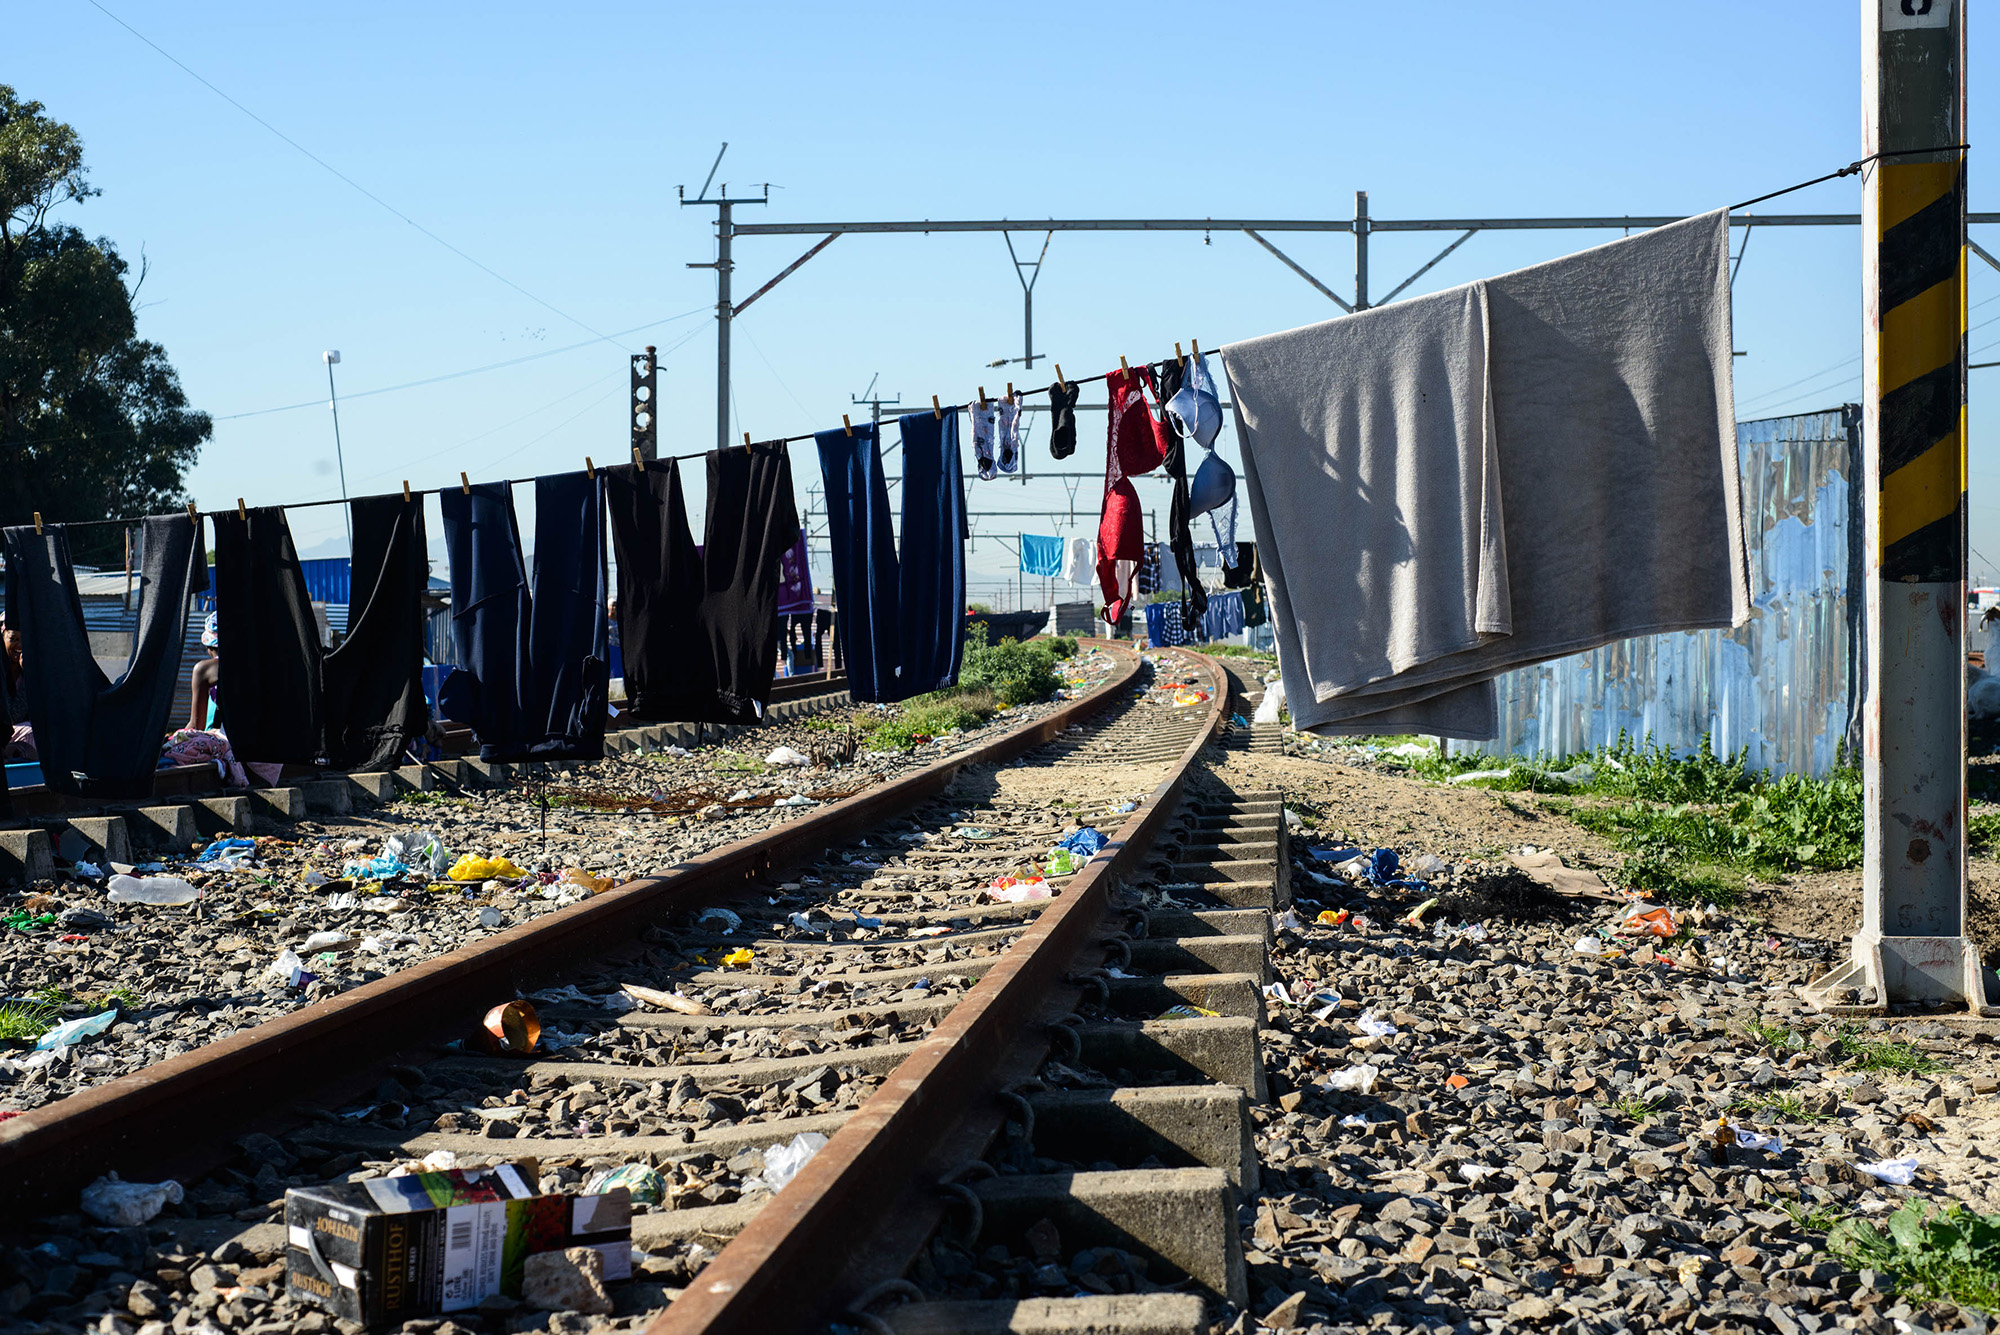 prasa rail informal settlements